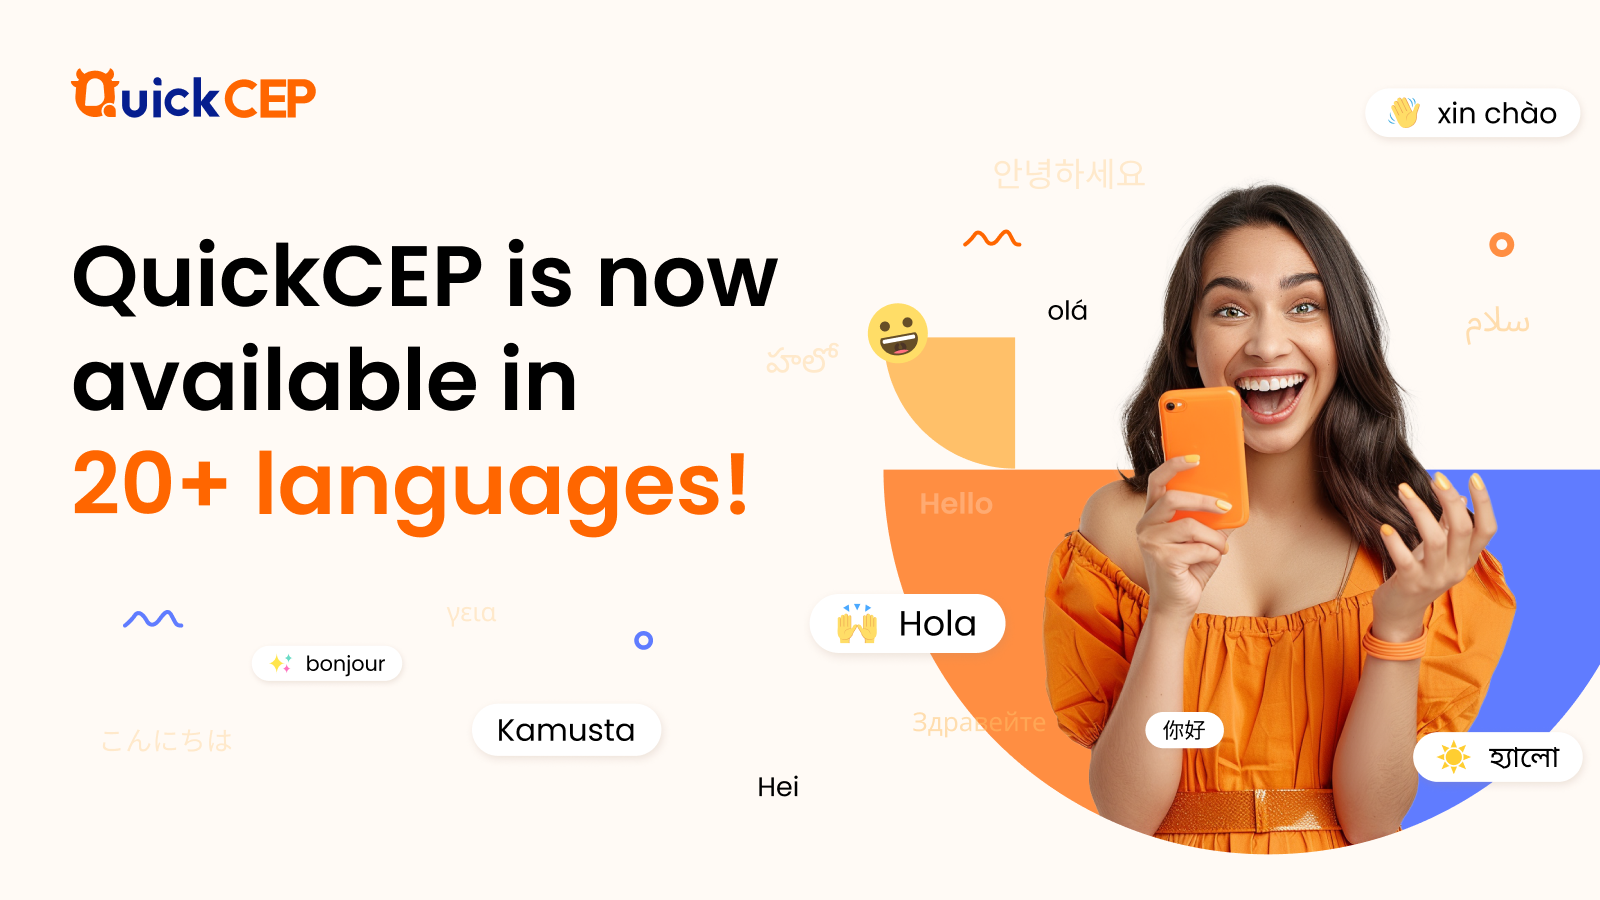 QuickCEP er nu tilgængelig på over 20 sprog